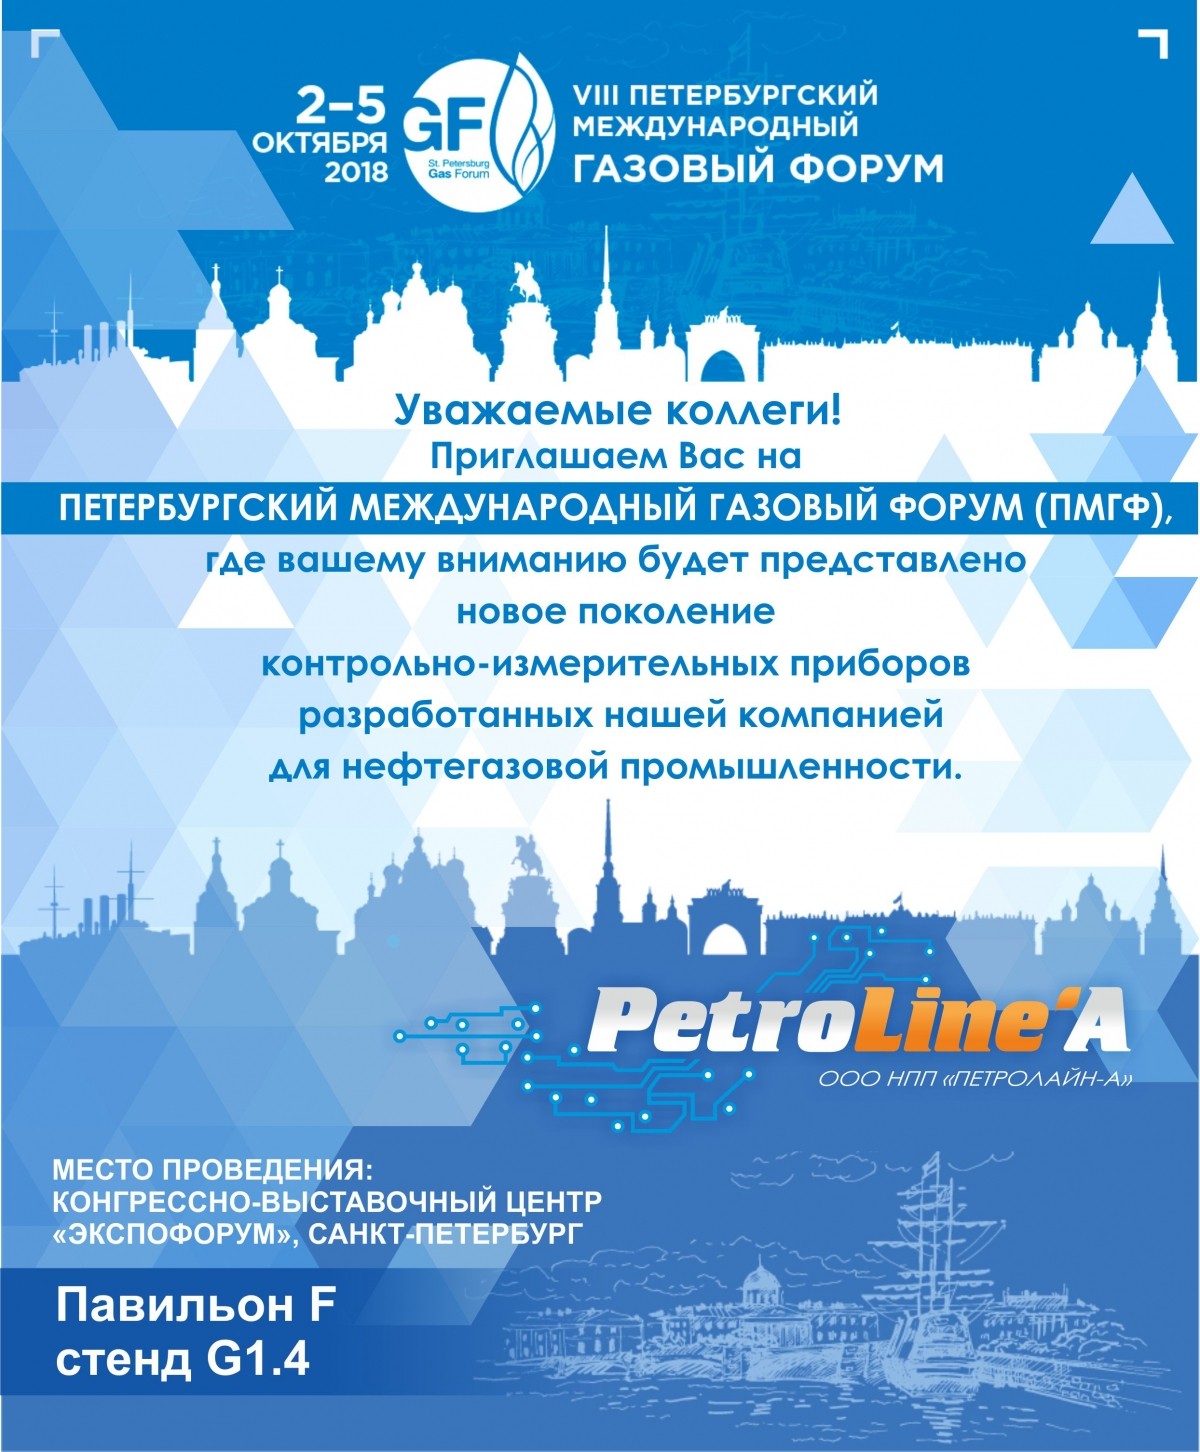 2-5 октября в городе Санкт-Петербург состоится VIII ПЕТЕРБУРГСКИЙ МЕЖДУНАРОДНЫЙ ГАЗОВЫЙ ФОРУМ